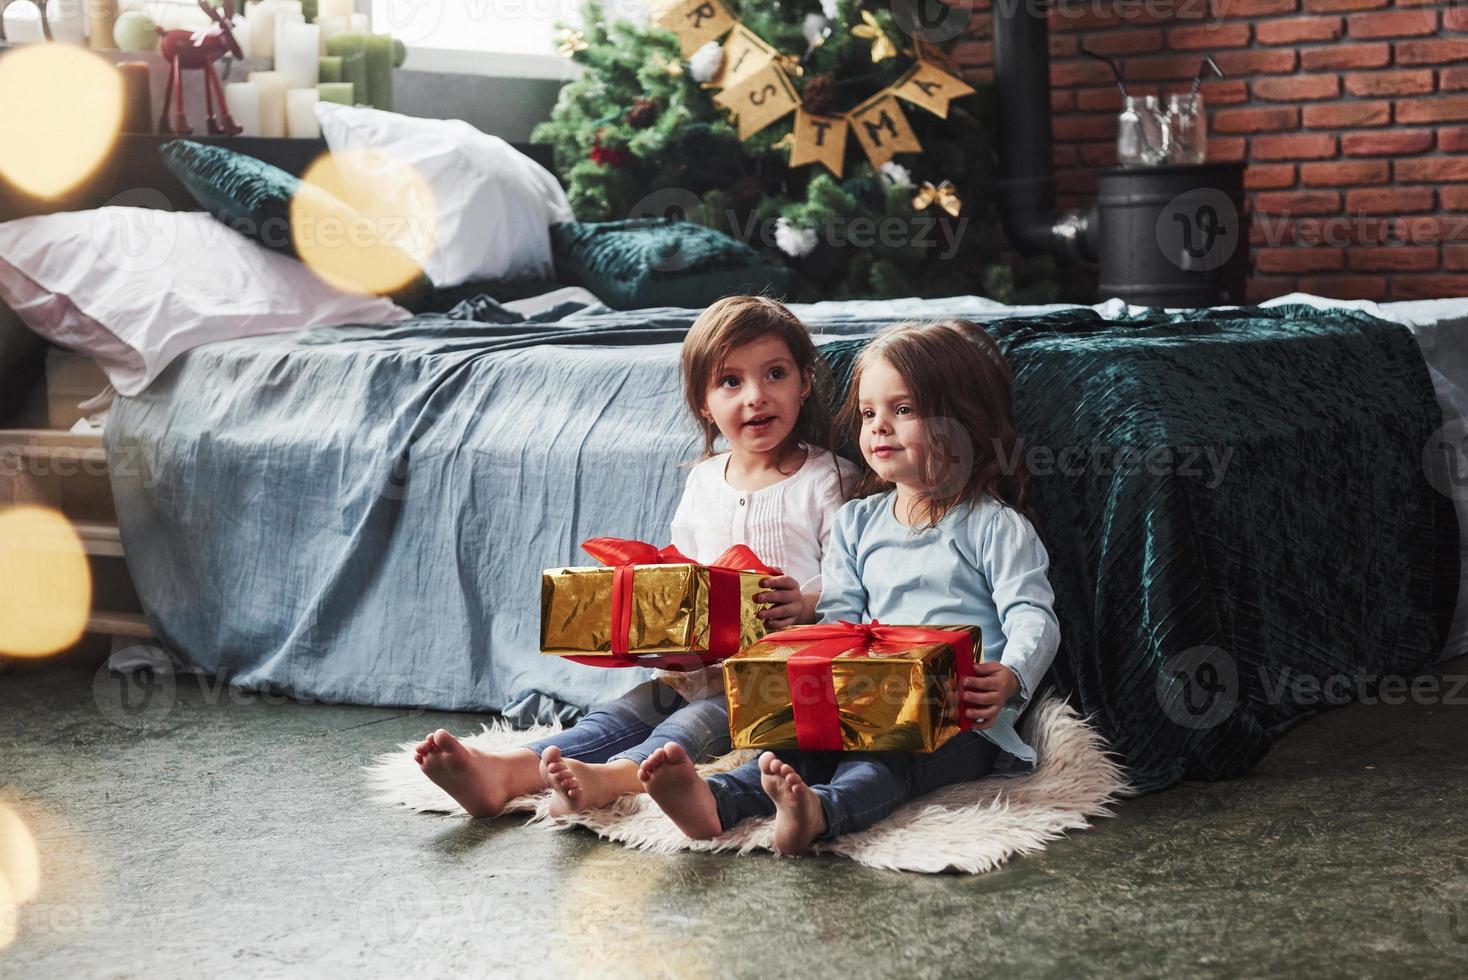 heute bekommt jemand sein Geschenk. Weihnachtsferien mit Geschenken für diese beiden Kinder, die drinnen im schönen Zimmer neben dem Bett sitzen foto